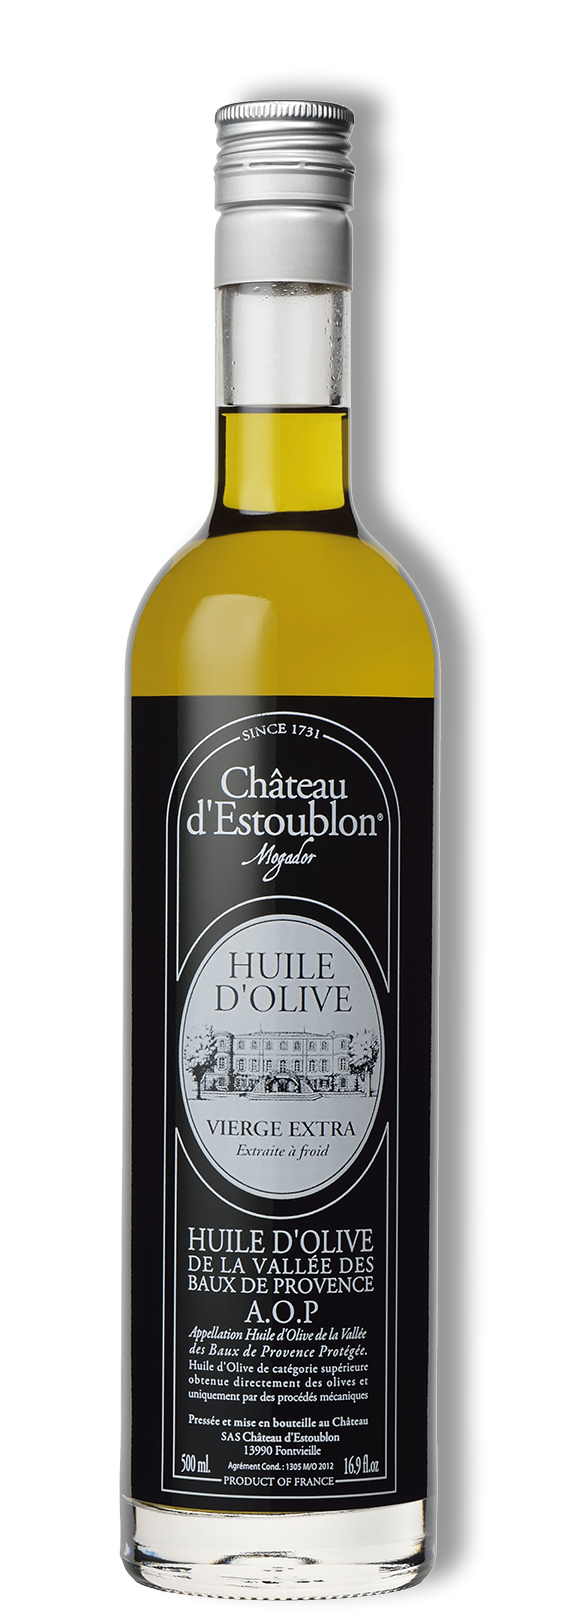 Huile d’olive AOP, Extra Virgin Olive Oil, Baux de Provence, Chateau d'Estoublon 0,5 l *MHD*